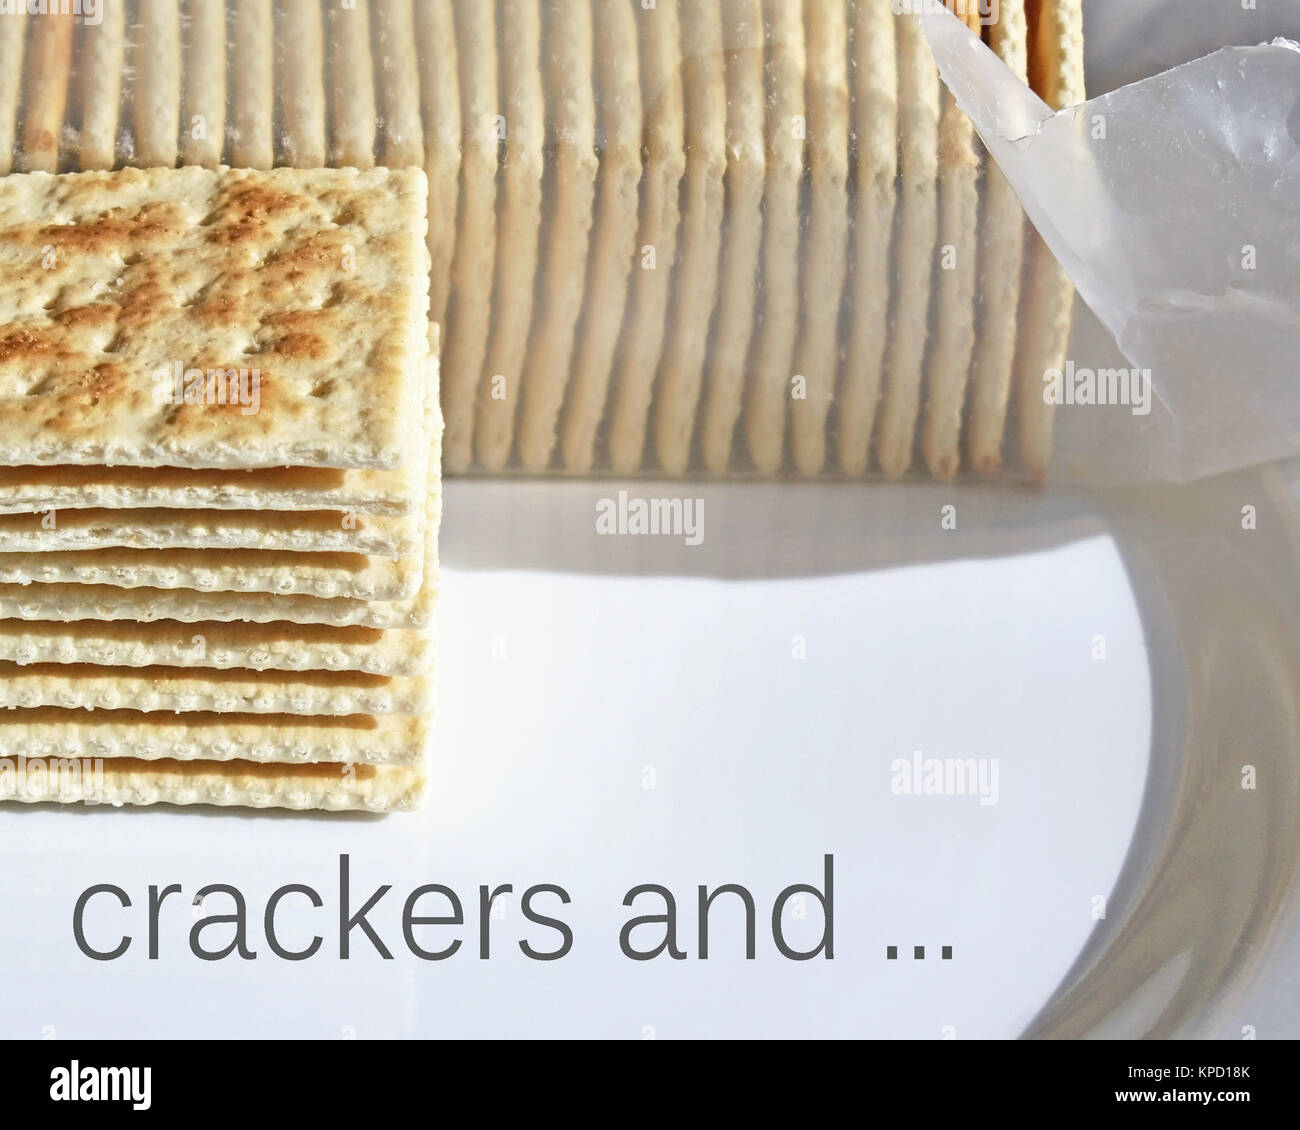 Pila di soda croccanti cracker per essere gustata o con un condimento Foto Stock